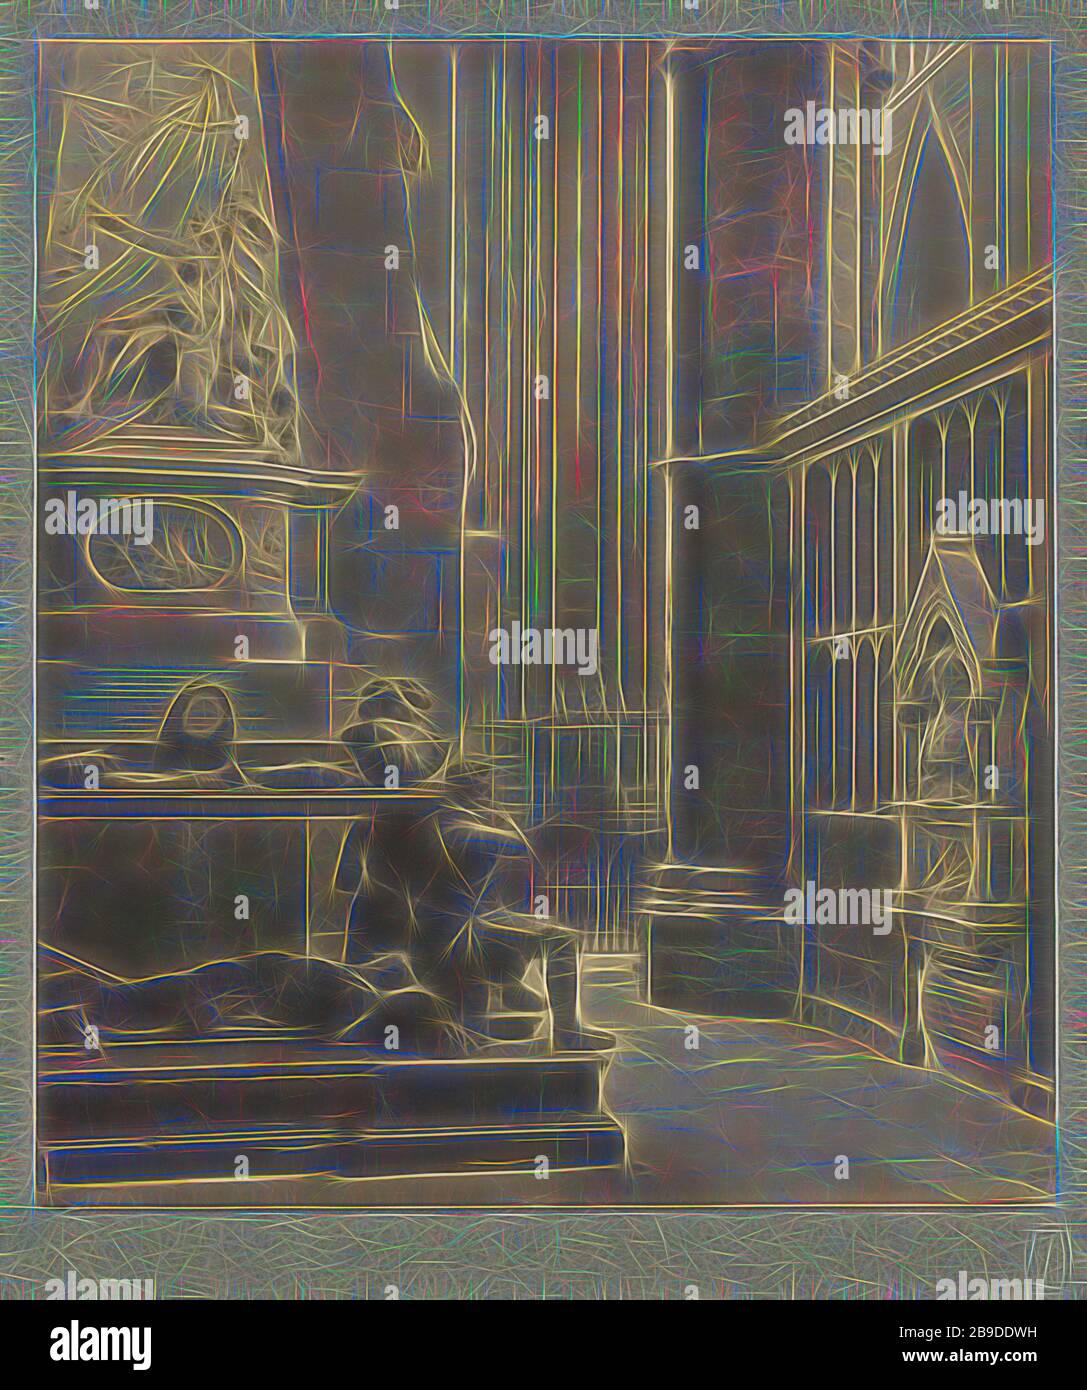 Westminster Abbey: North Querhaus East Aisle, Tomb of de Vere and Franklin, Frederick H. Evans (Britisch, 1853-1943), 1911, Platindruck, 22,1 x 19,4 cm (8 11,16 x 7 5,8 Zoll, von Gibon neu erdacht, Design von warmem, fröhlichem Leuchten von Helligkeit und Lichtstrahlen. Klassische Kunst mit moderner Note neu erfunden. Fotografie, inspiriert vom Futurismus, die dynamische Energie moderner Technologie, Bewegung, Geschwindigkeit und Kultur revolutionieren. Stockfoto